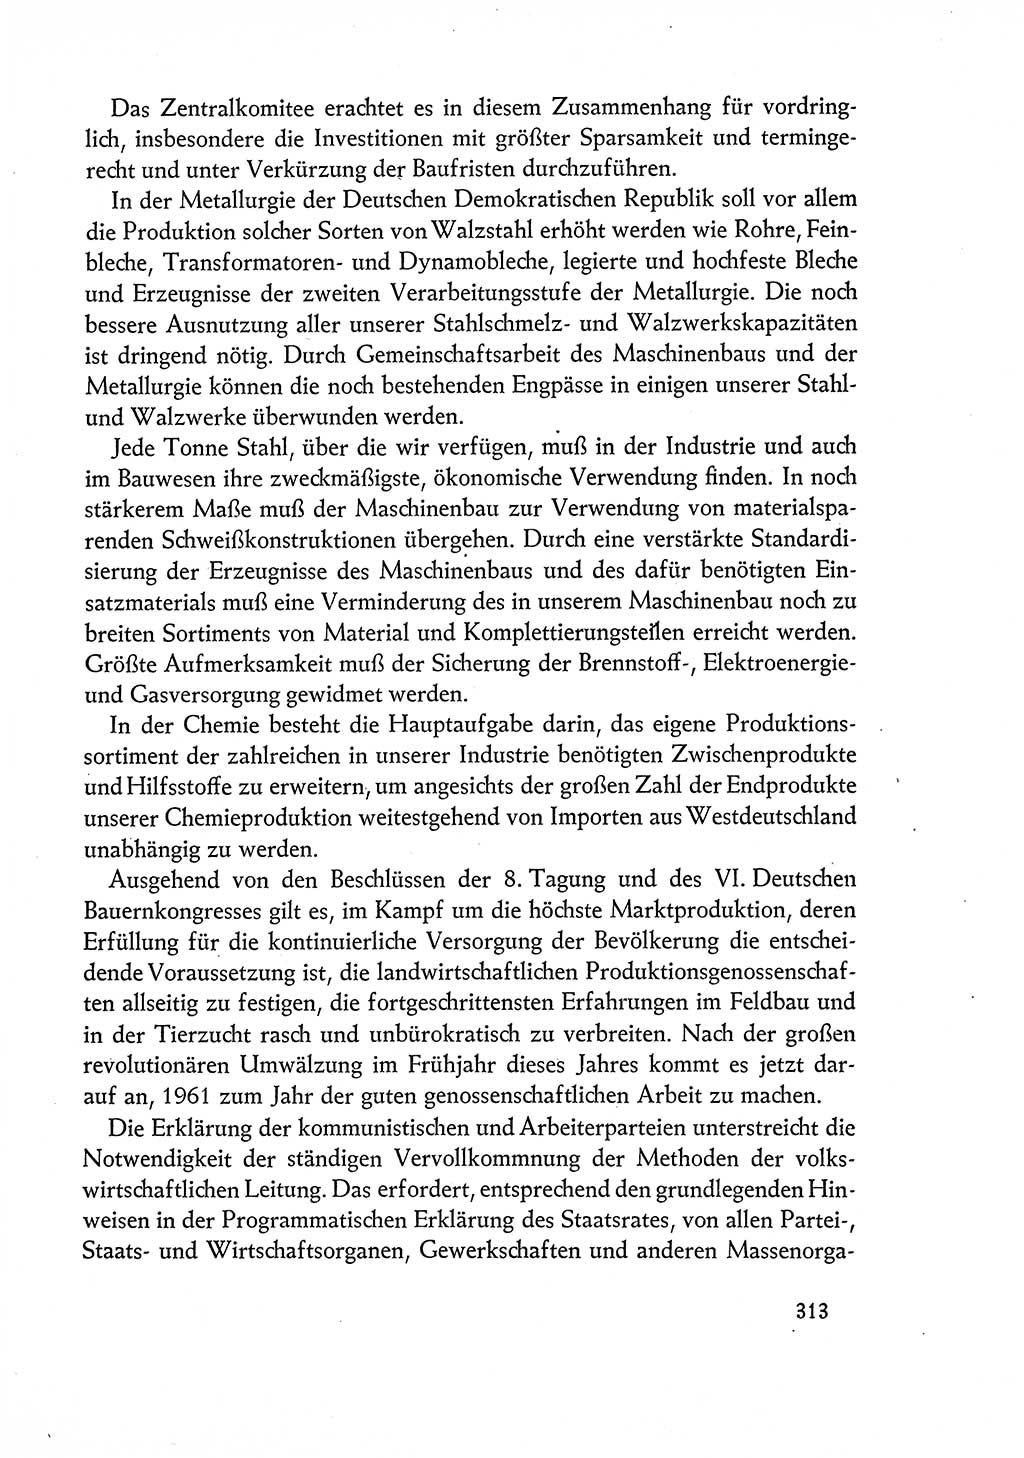 Dokumente der Sozialistischen Einheitspartei Deutschlands (SED) [Deutsche Demokratische Republik (DDR)] 1960-1961, Seite 313 (Dok. SED DDR 1960-1961, S. 313)